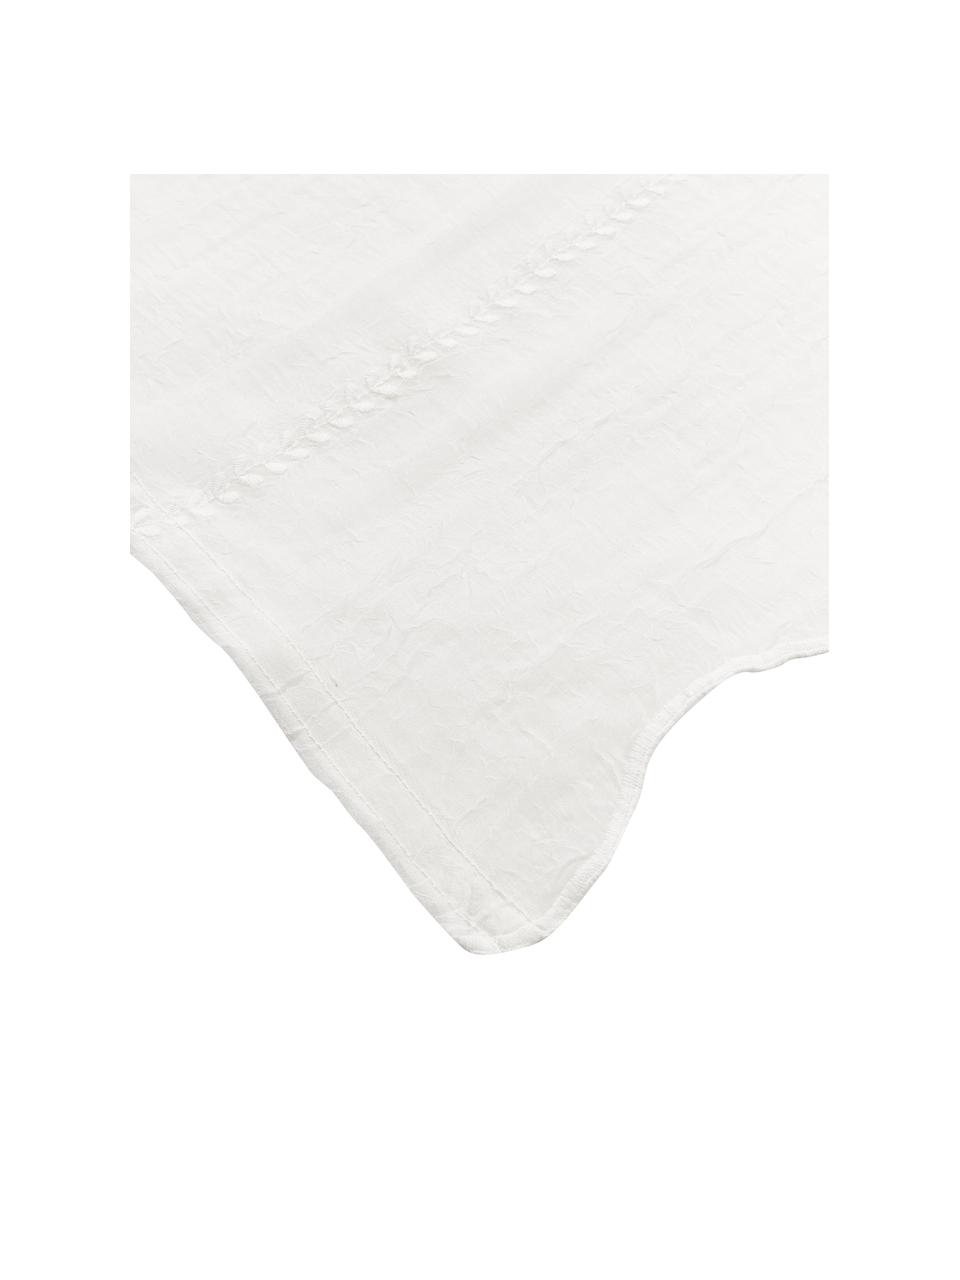 Geborduurd tafelkleed Bilia in wit met geschulpte zoom, 100% polyester, Gebroken wit, Voor 6 - 10 personen (B 160 x L 320 cm)